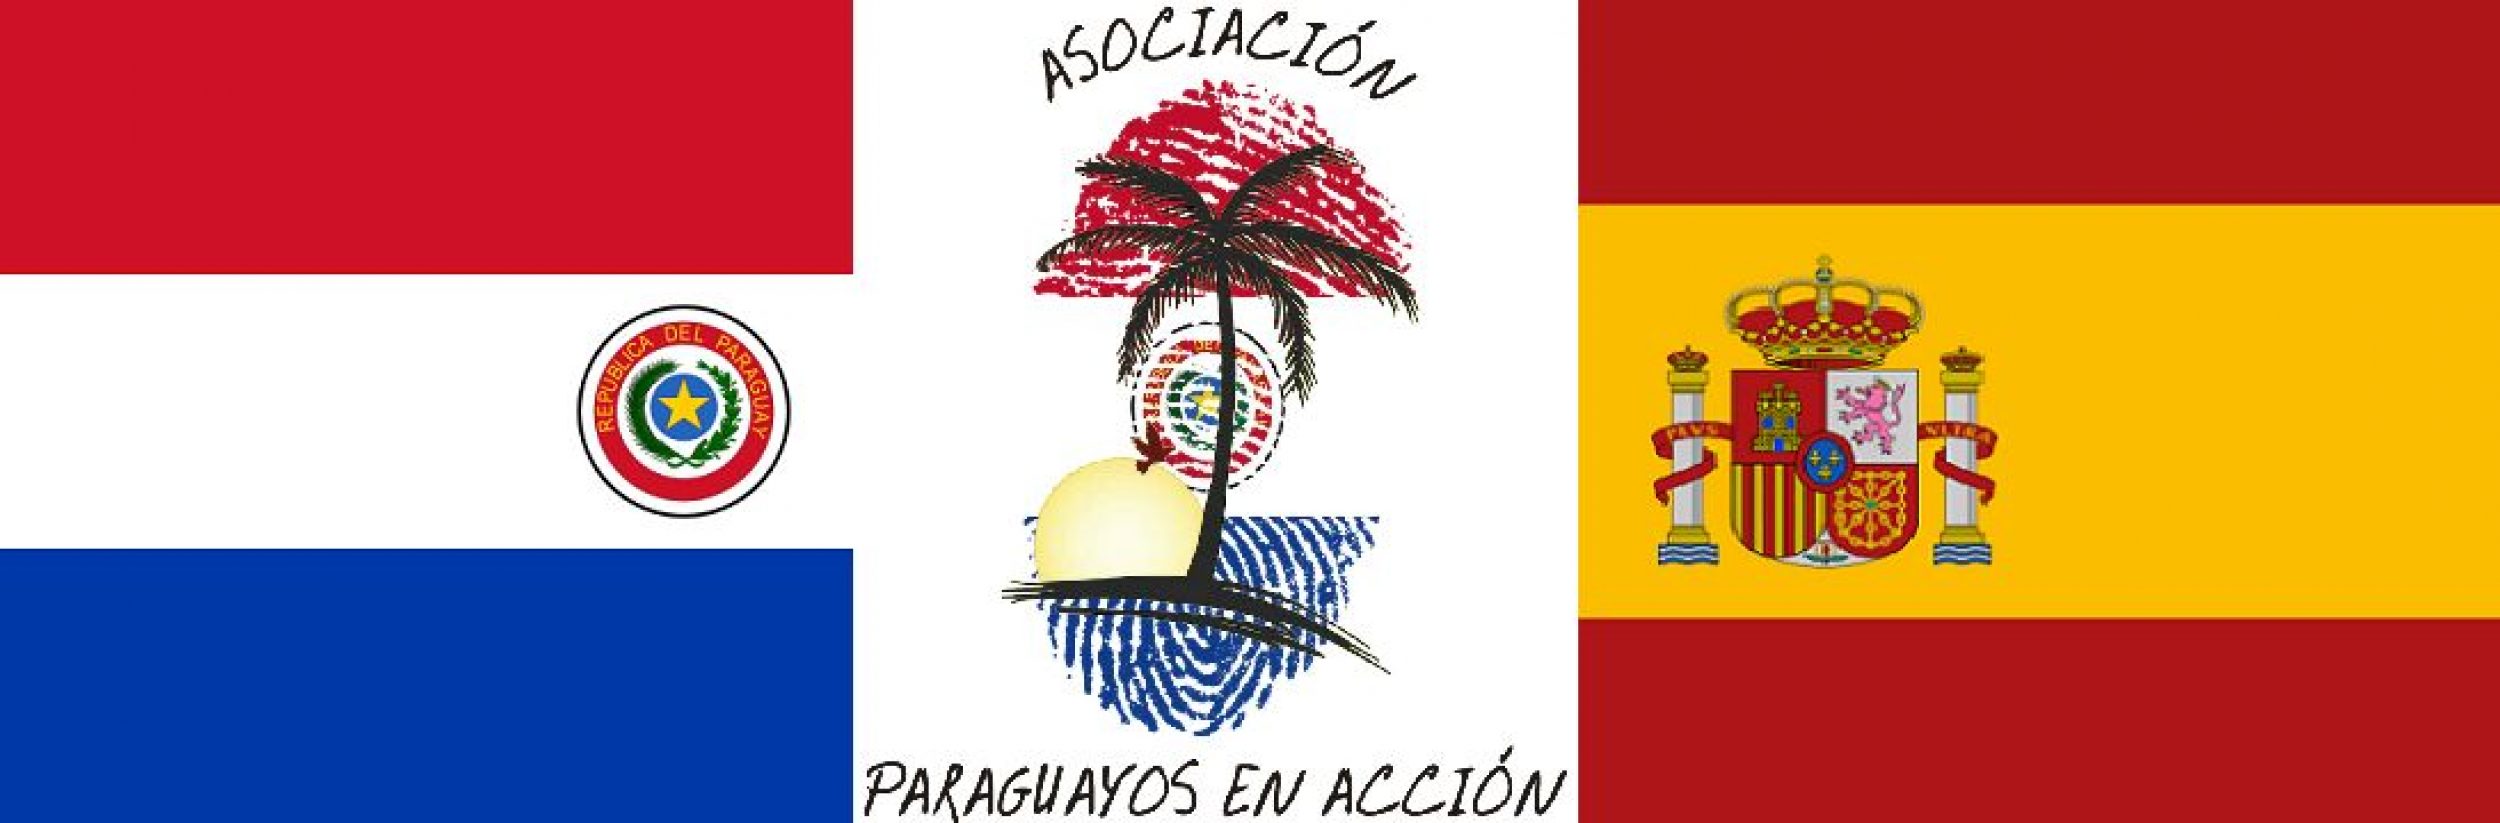 Asociación Paraguayos en Acción Valencia